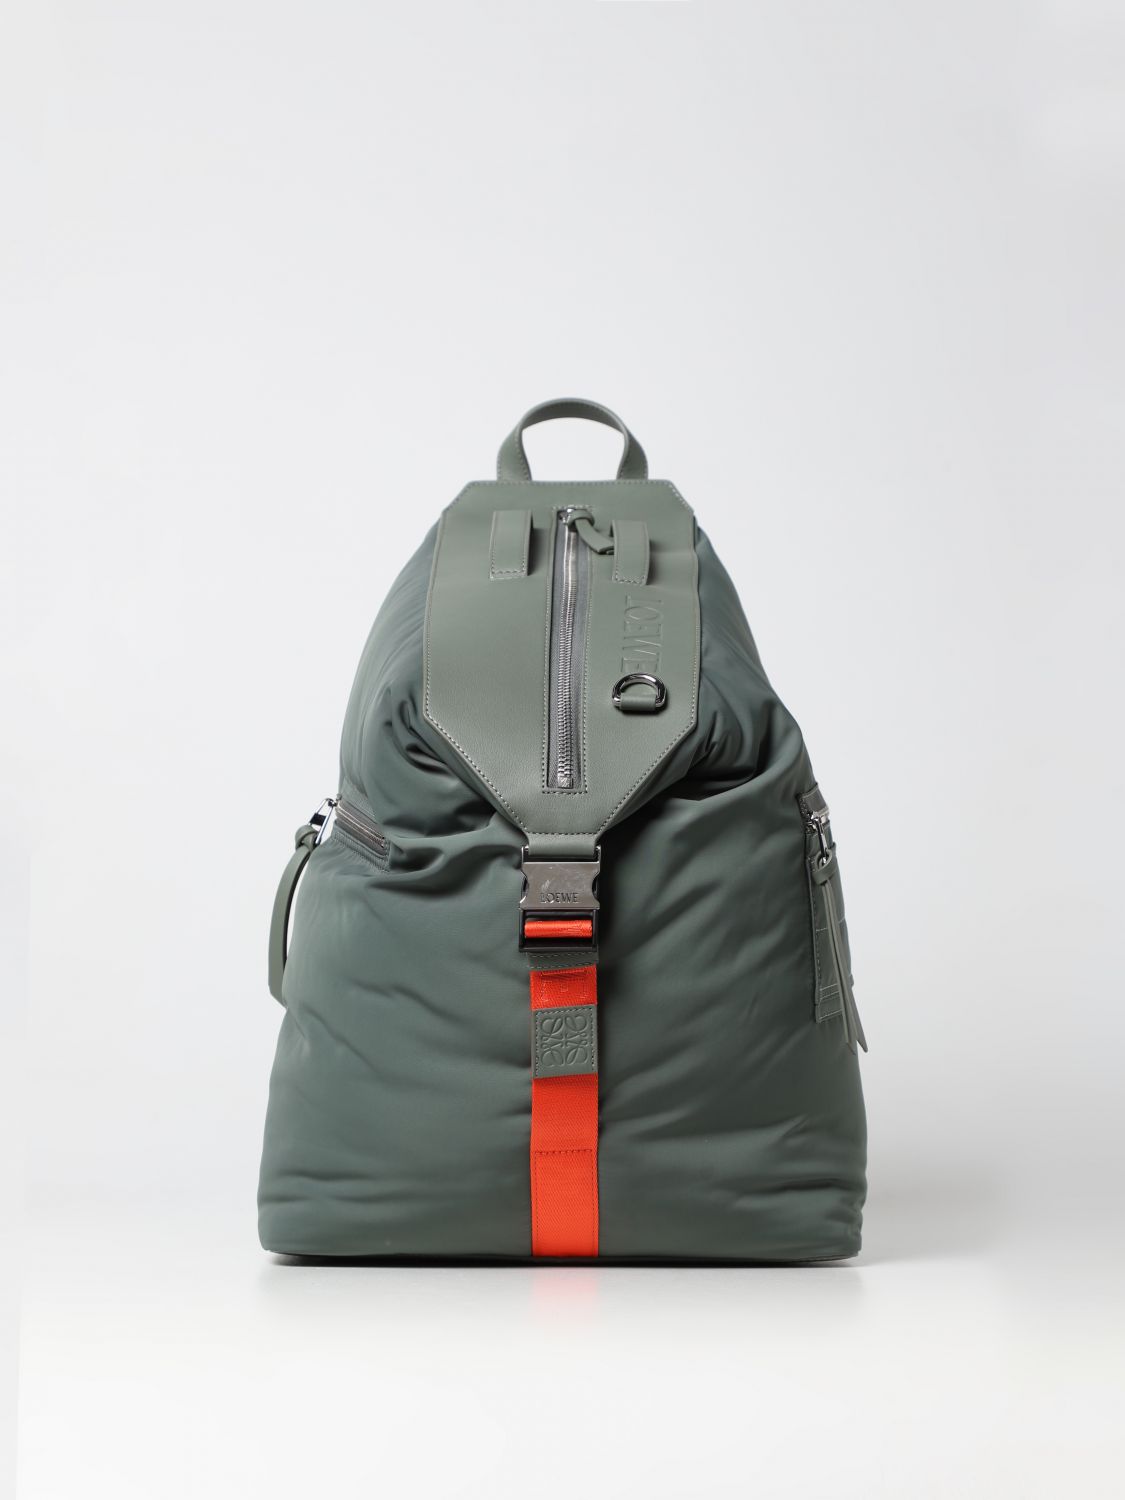 LOEWE: Puffer nylon and leather backpack - Kaki | Loewe backpack ...